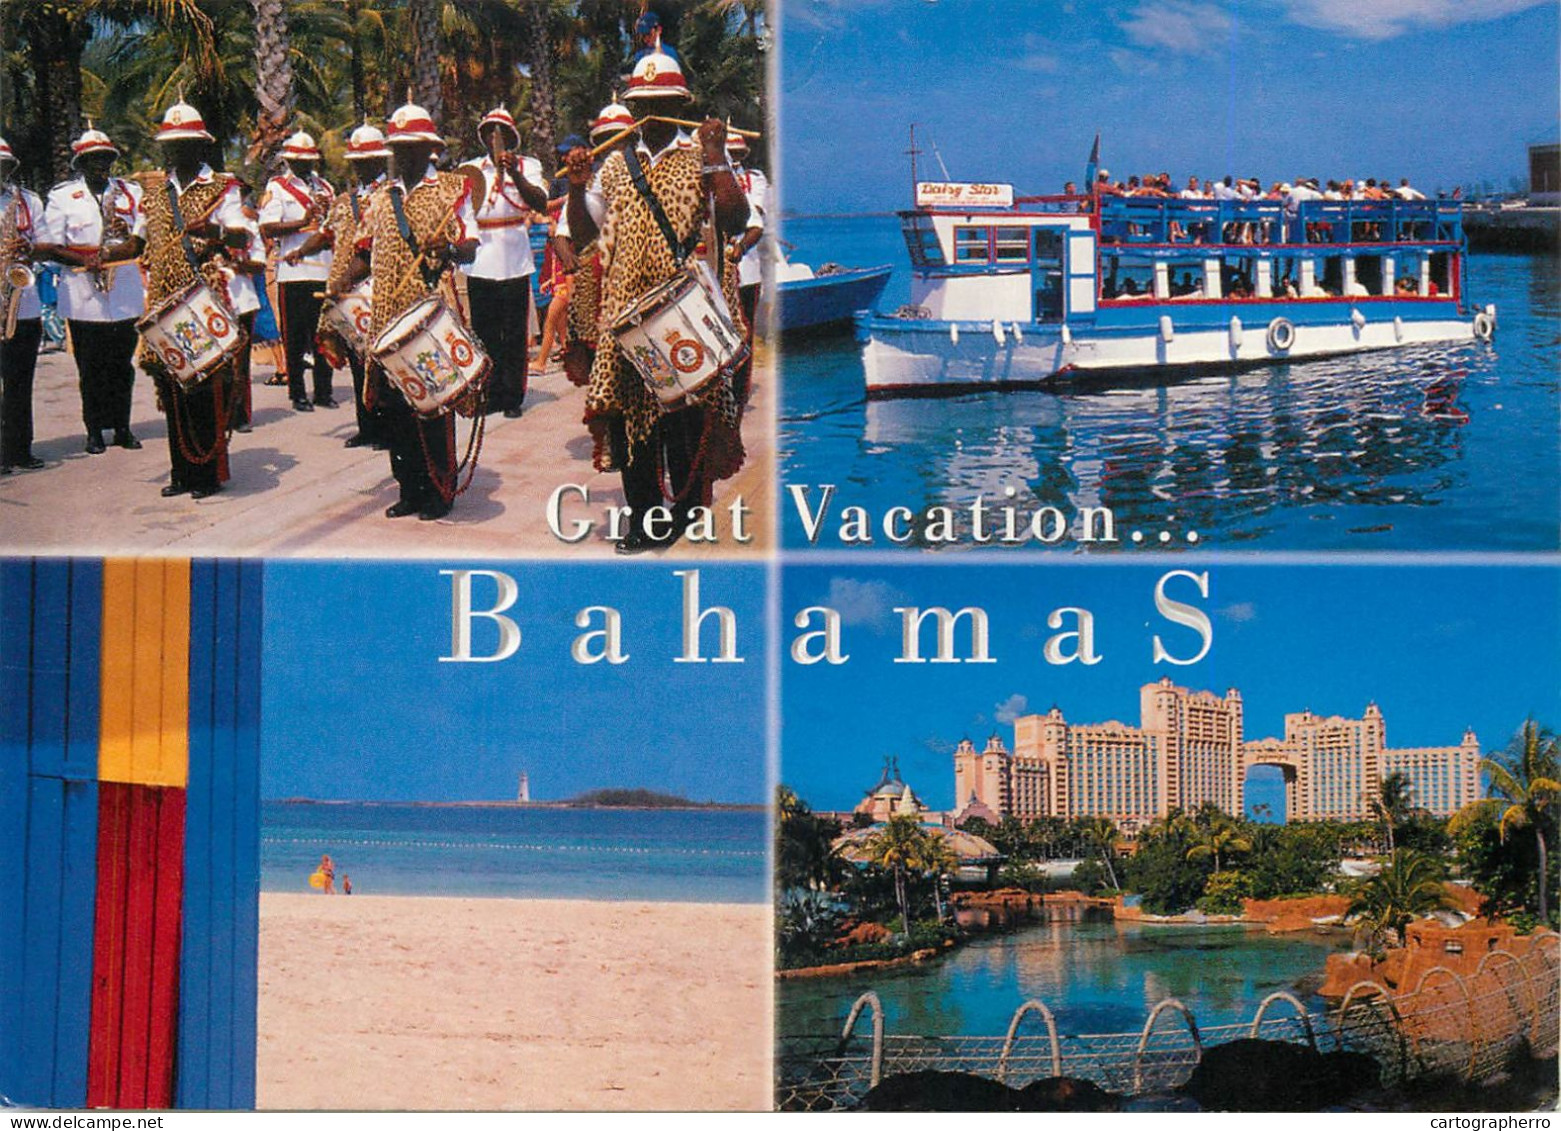 Postcard Bahamas Great Vacation Advertising Band Parade - Bahama's